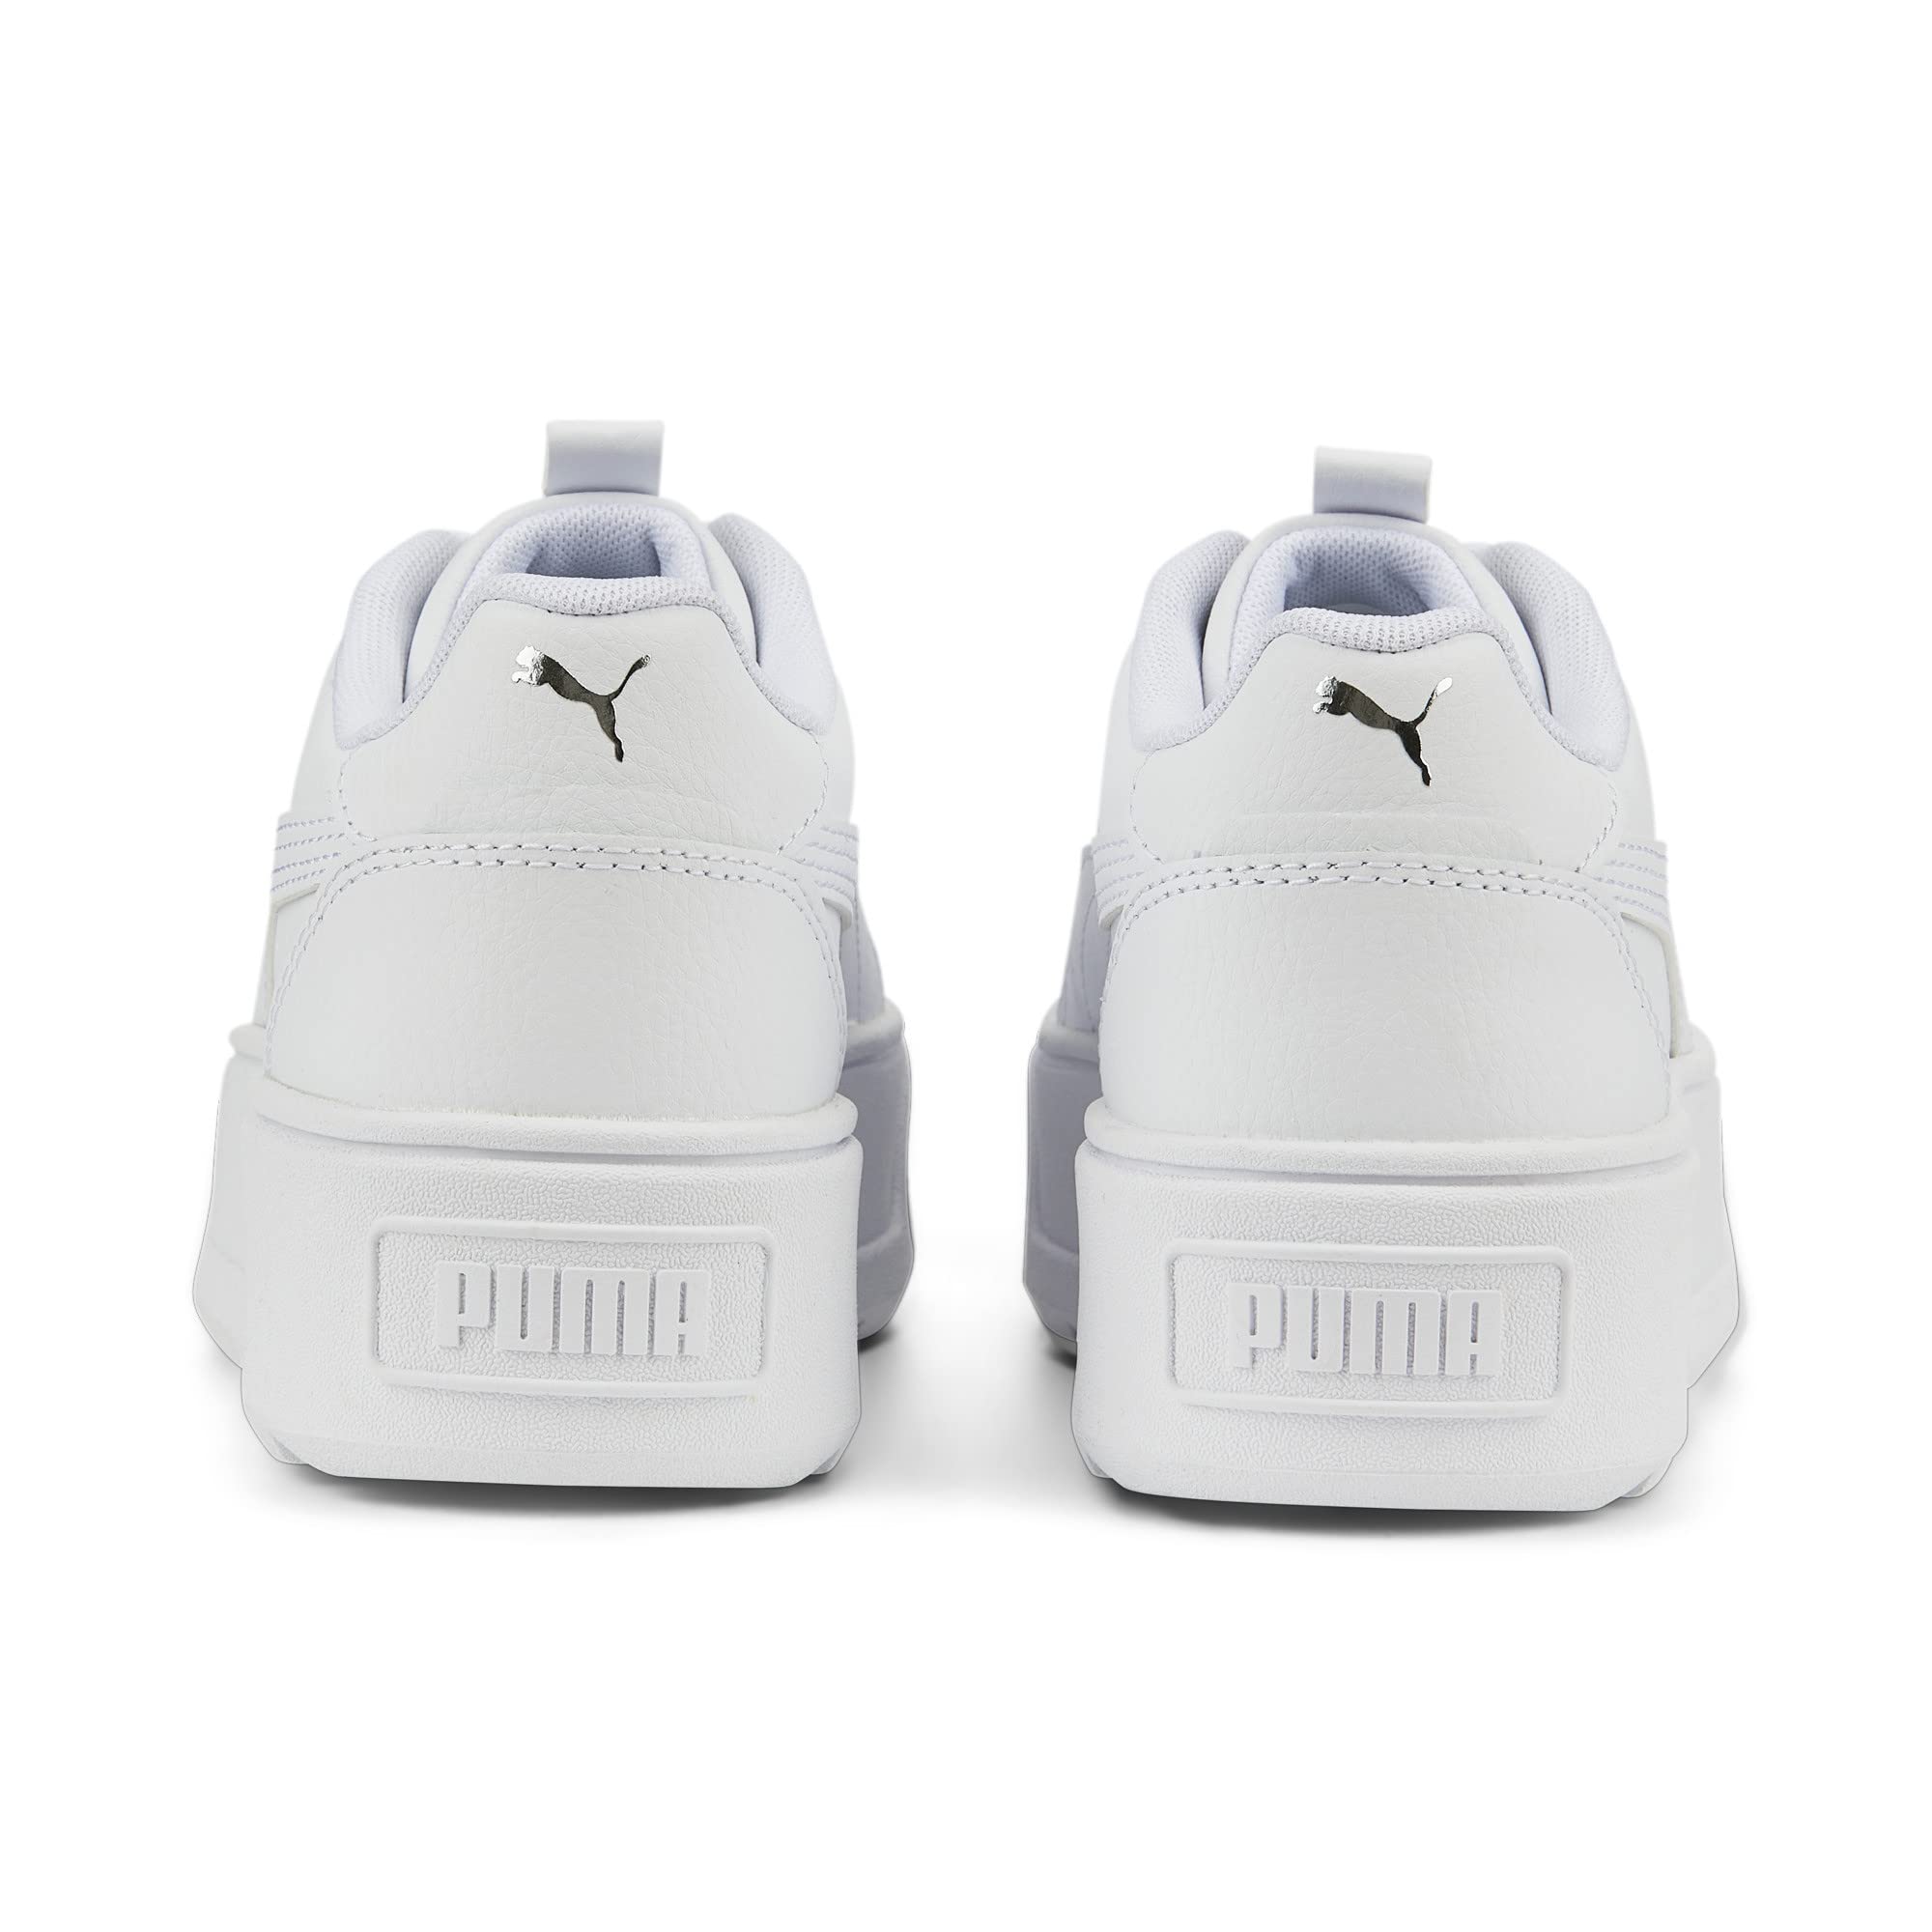 PUMA Unisex-Child Karmen Rebelle Sneaker